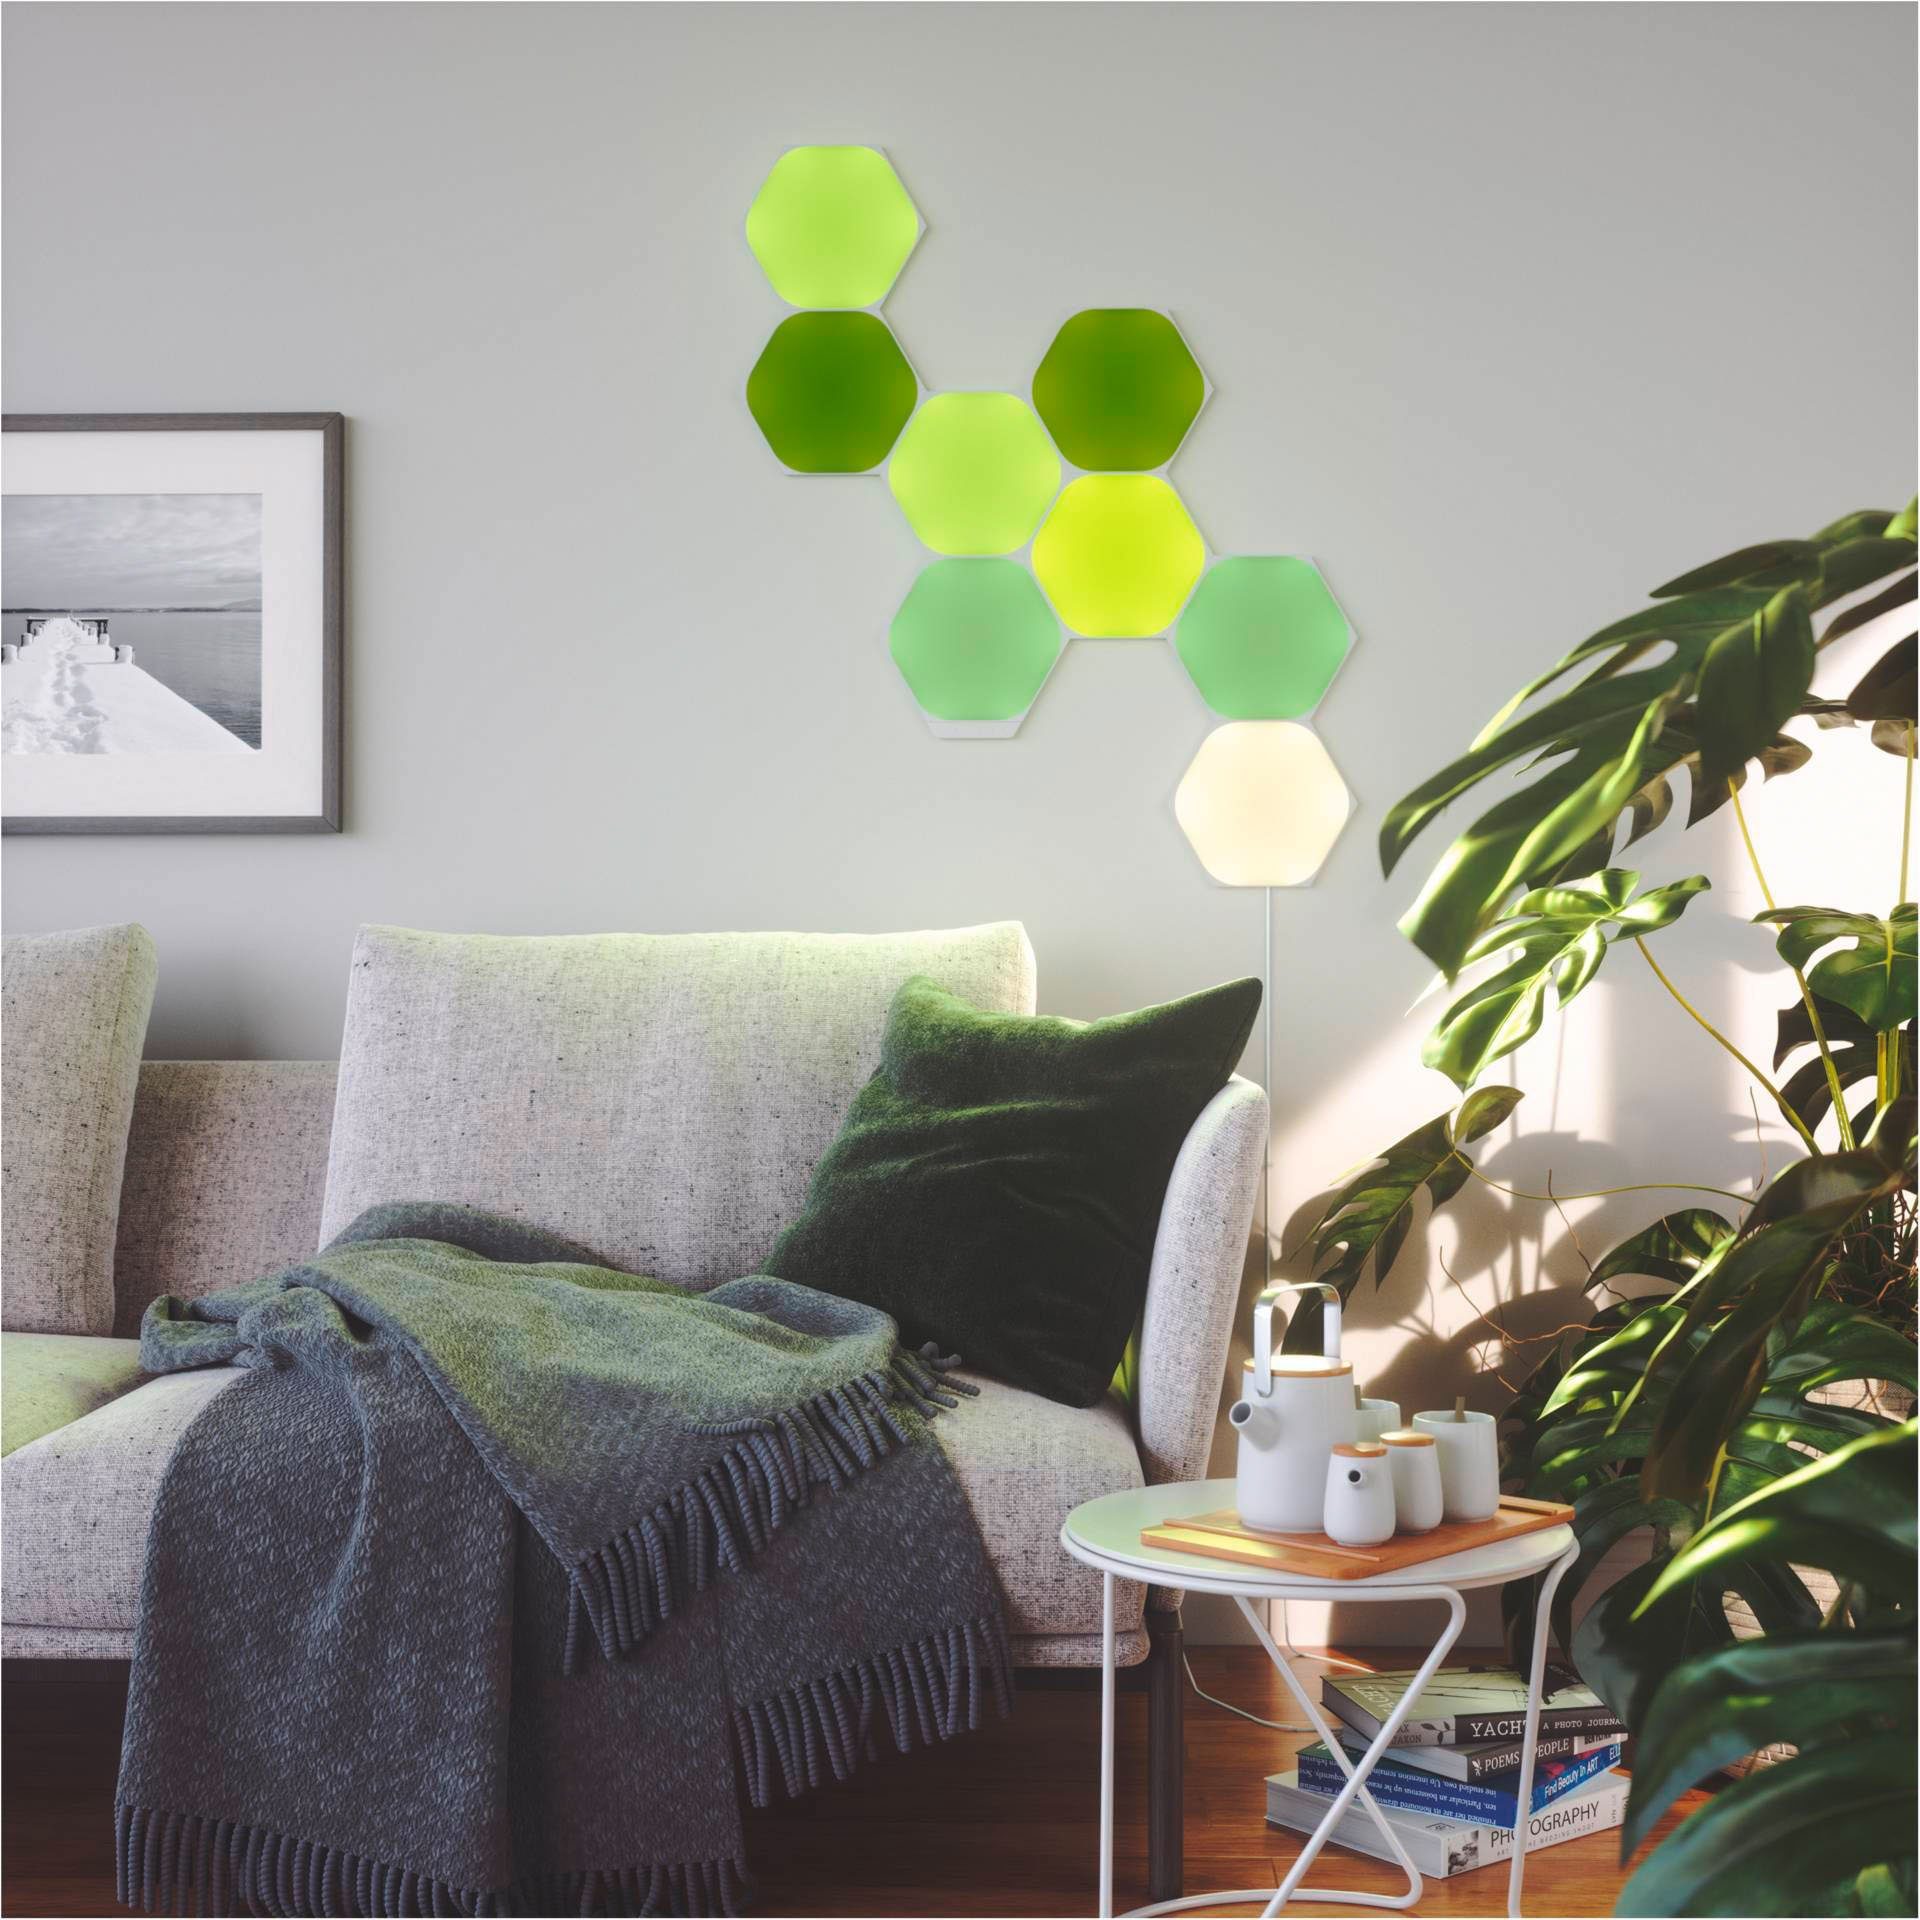 Panel nanoleaf LED integriert, Hexagons, Shapes fest Dimmfunktion, LED Farbwechsler